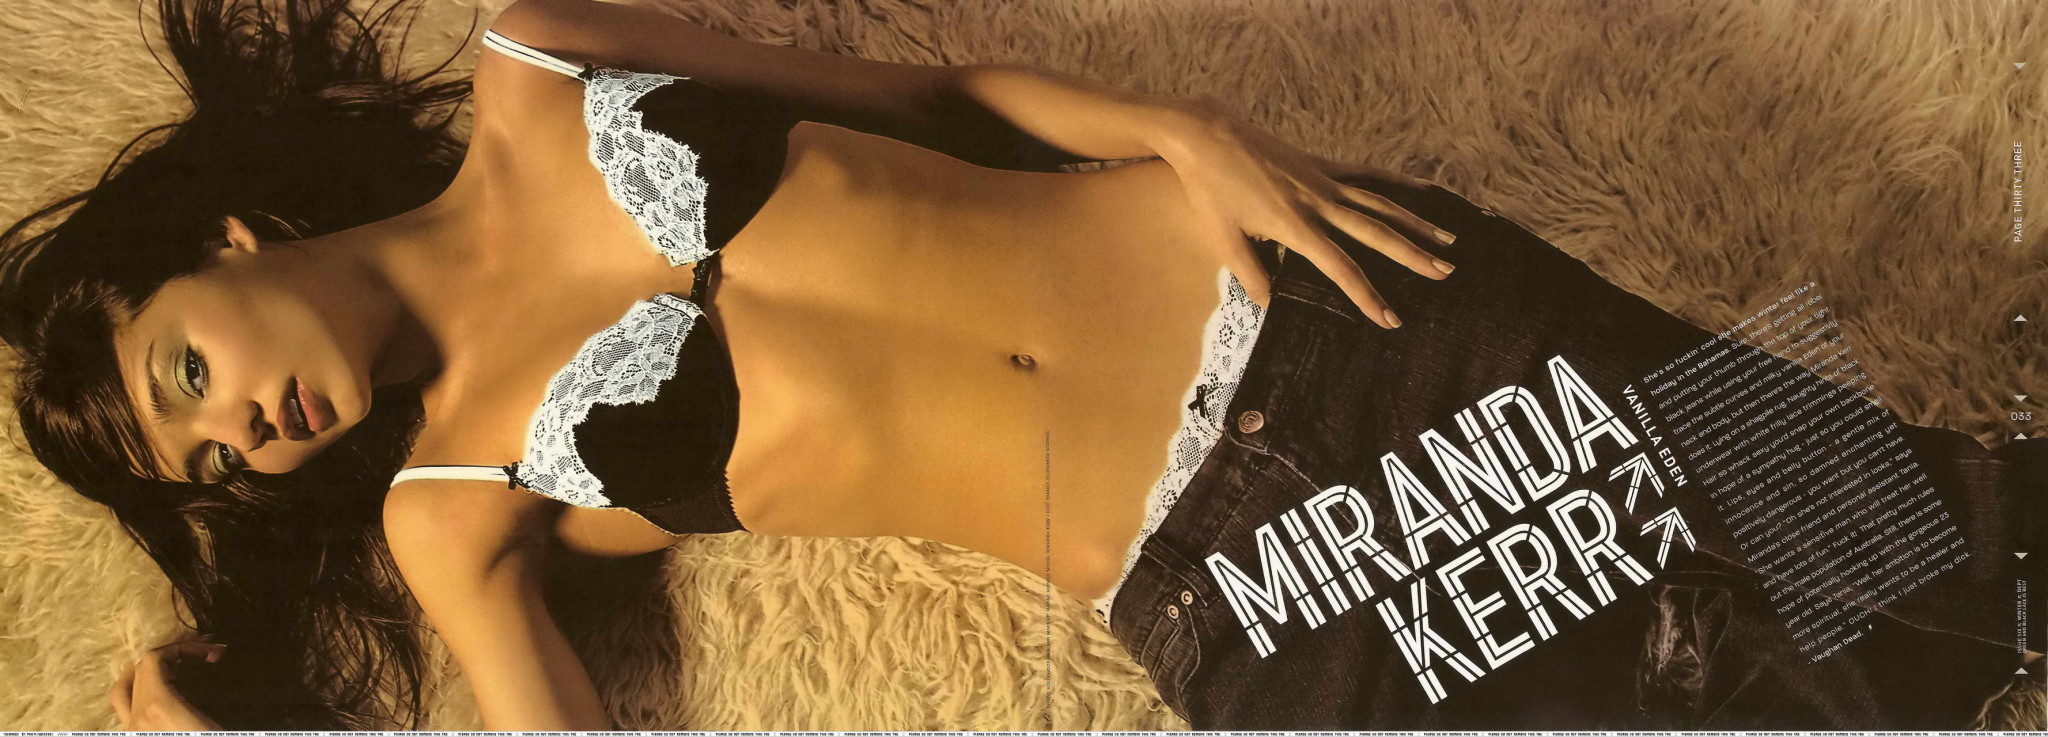 Miranda kerr mostrando sus alegres tetas en el número de verano 2010 de i-d 'zine
 #75349586